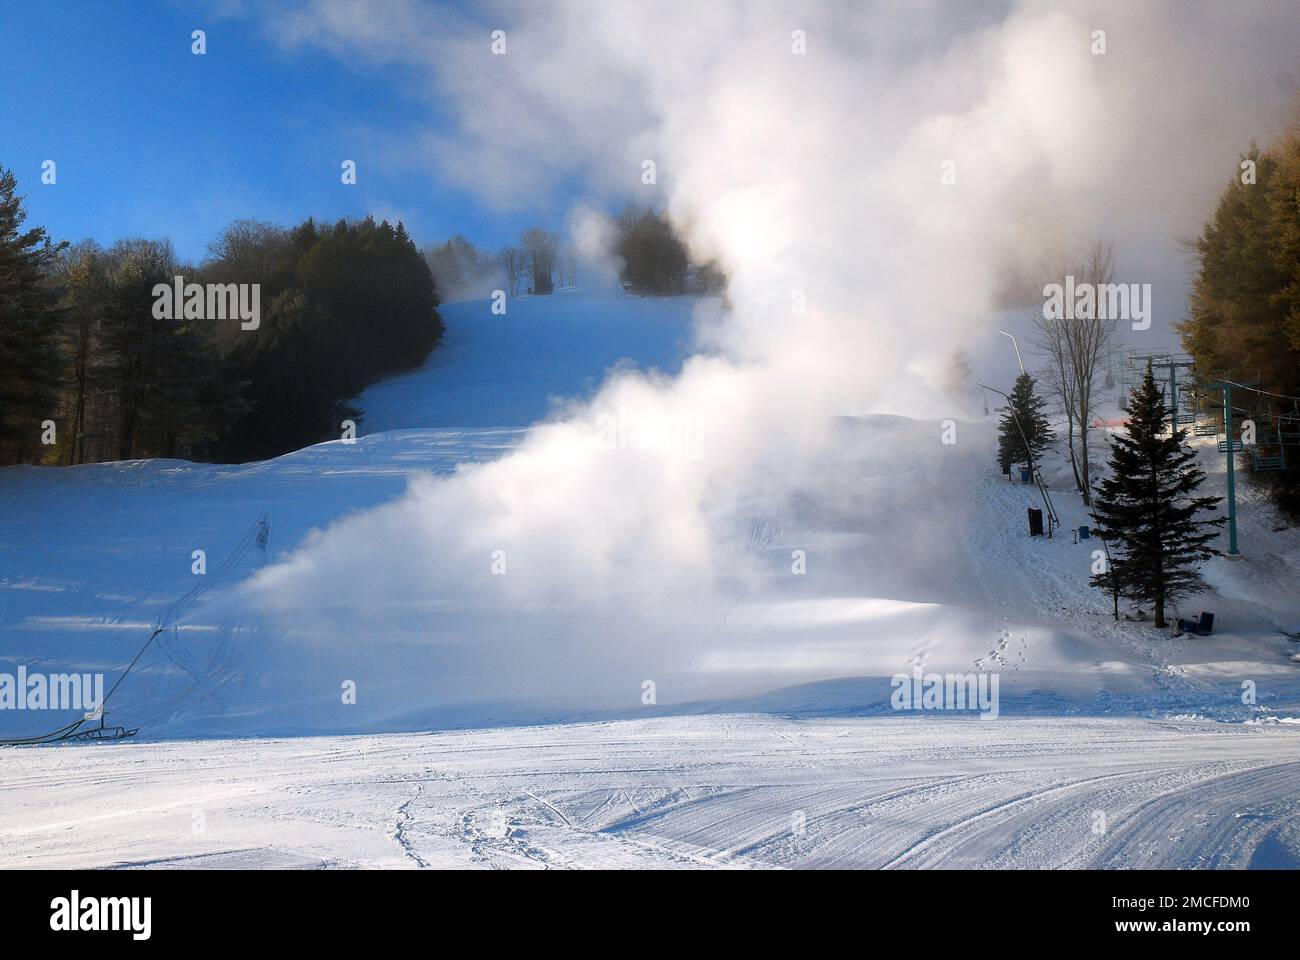 Le macchine per la neve spruzzano neve nuova sulle piste da sci di montagna in Vermont in inverno Foto Stock